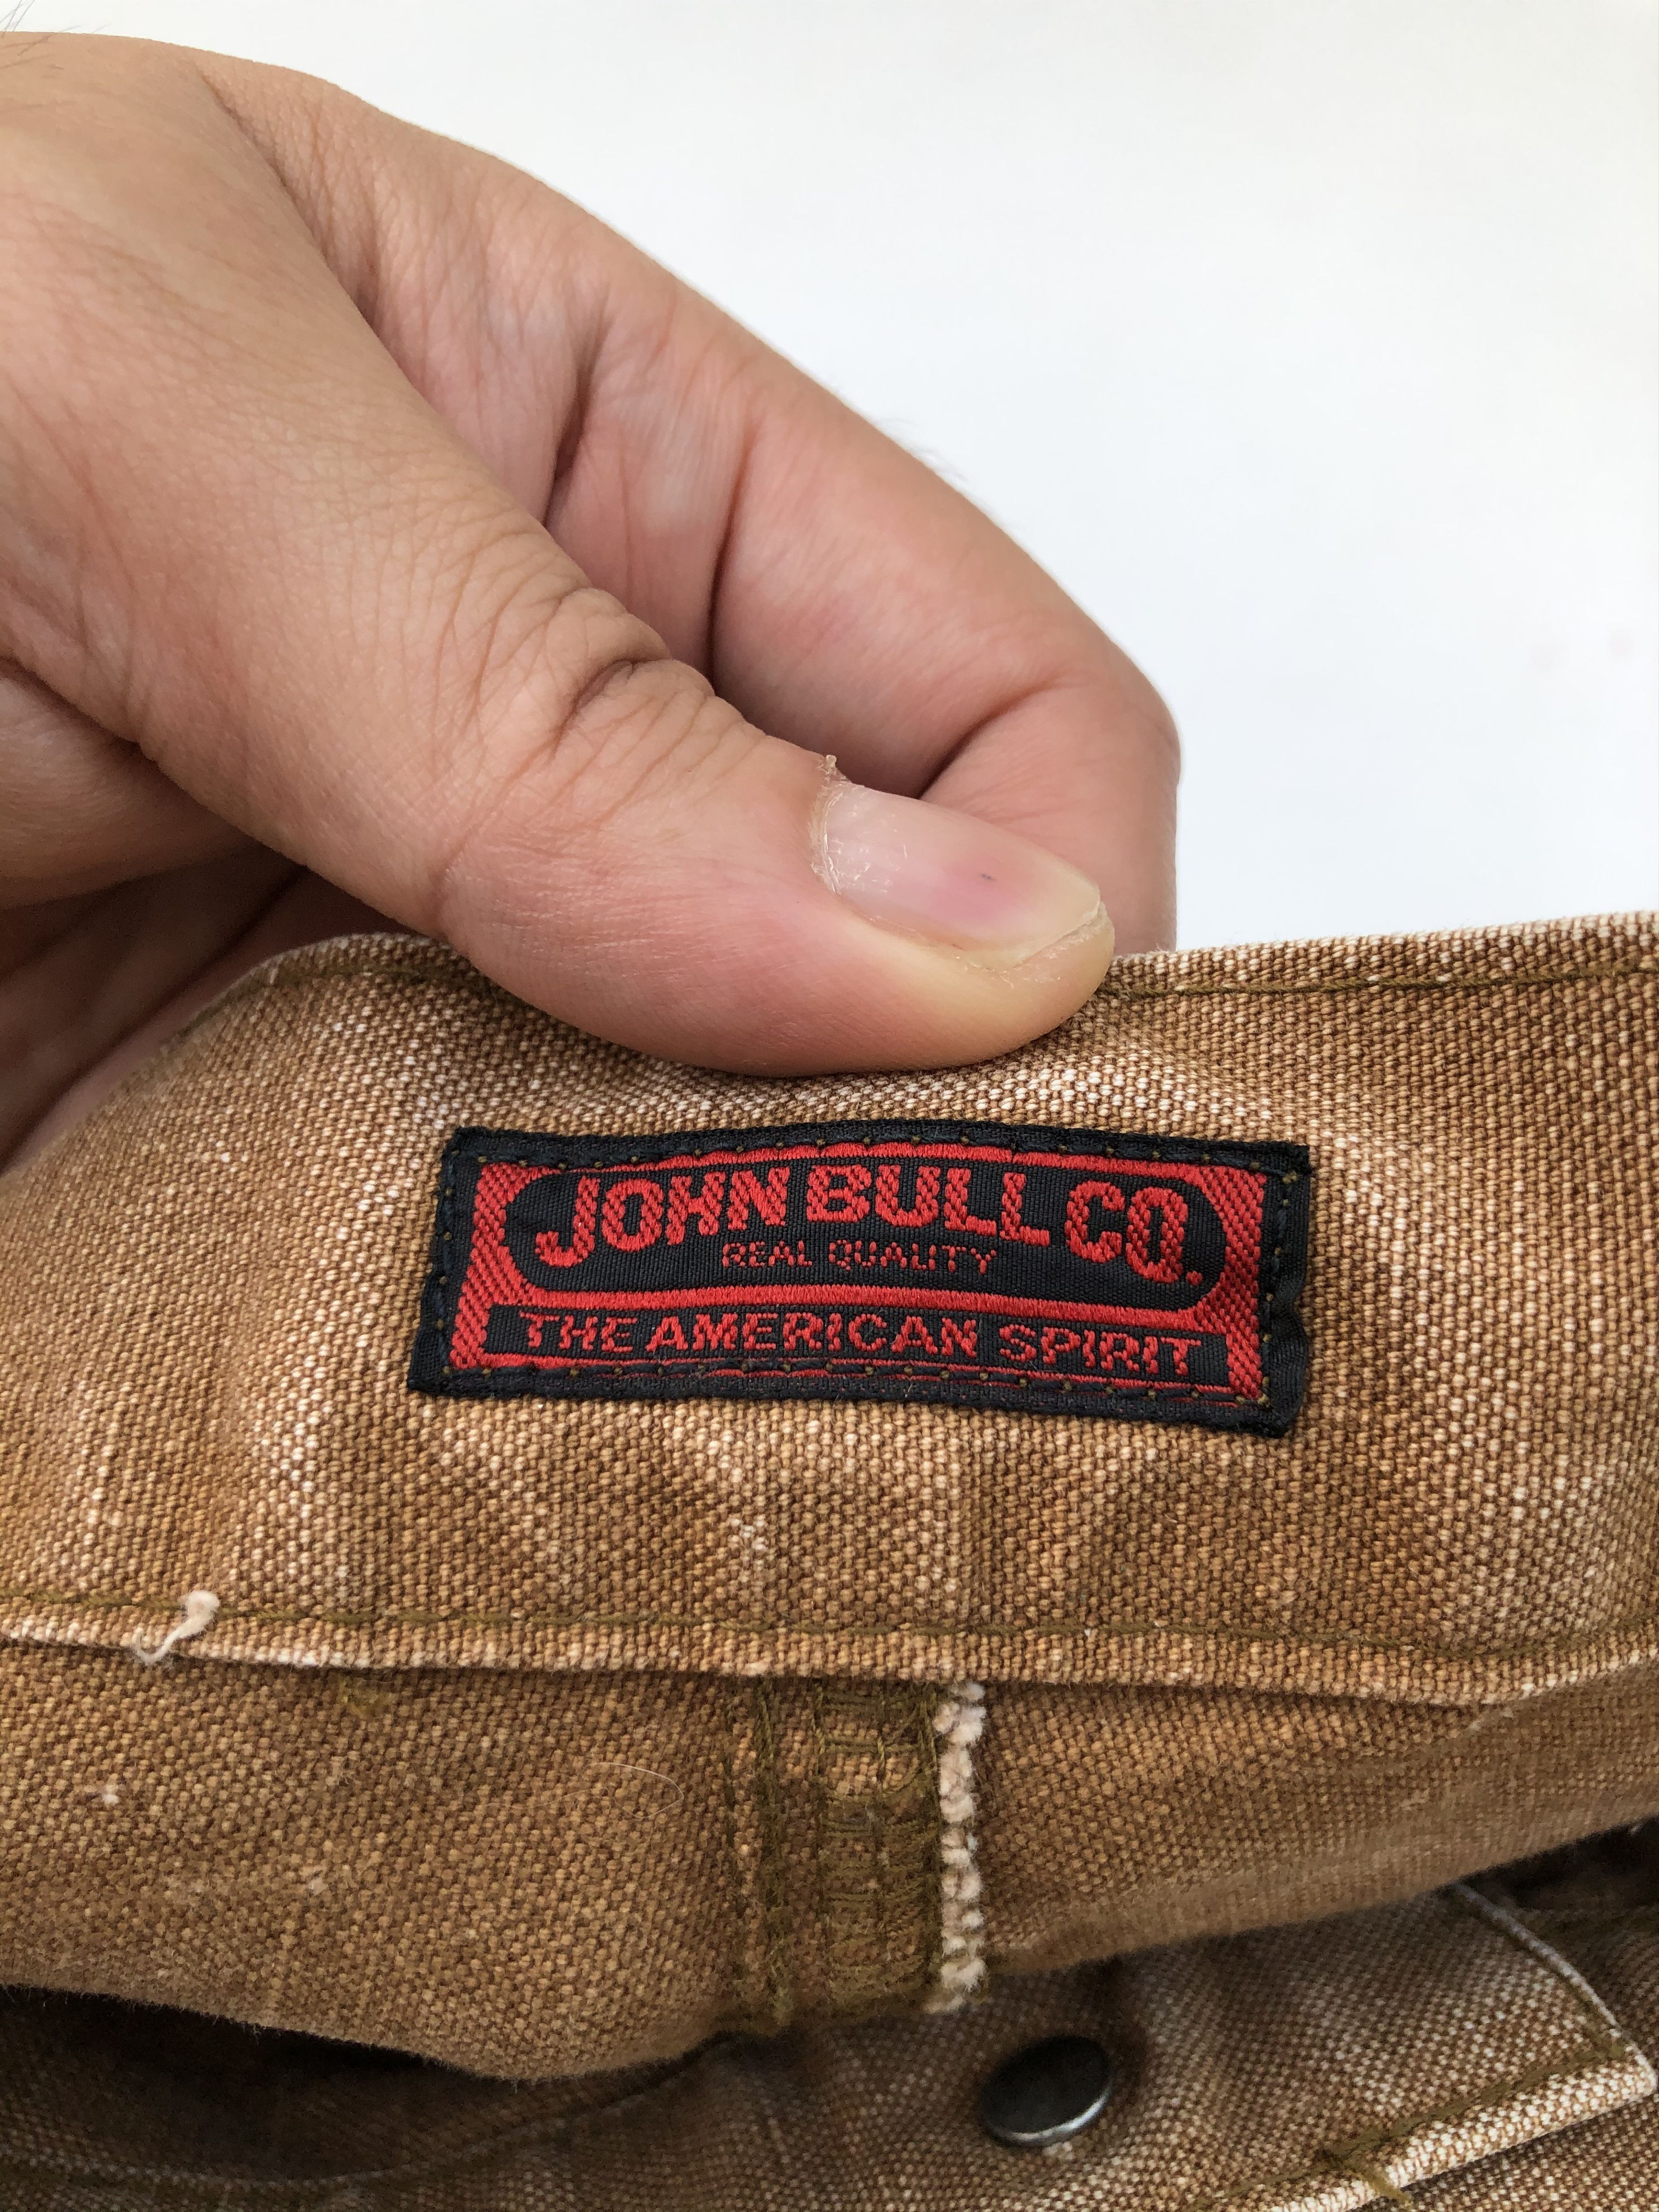 Vintage VINTAGE JOHN BULL BUSH PANTS Size US 33 - 8 Thumbnail